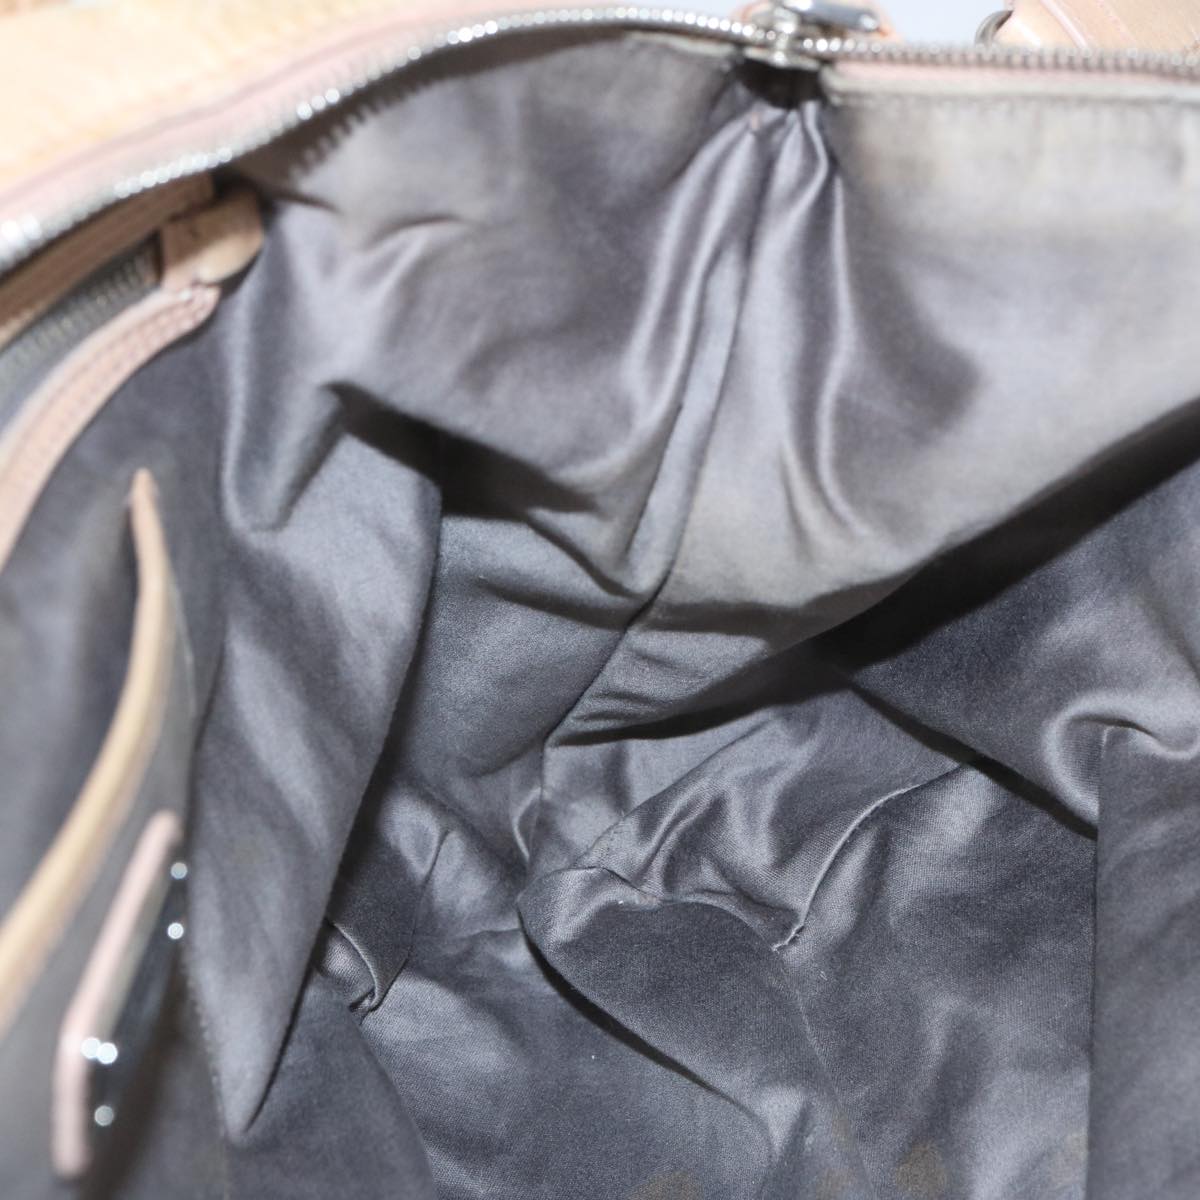 Miu Miu Tote Bag Leather 2way Beige Auth 66943